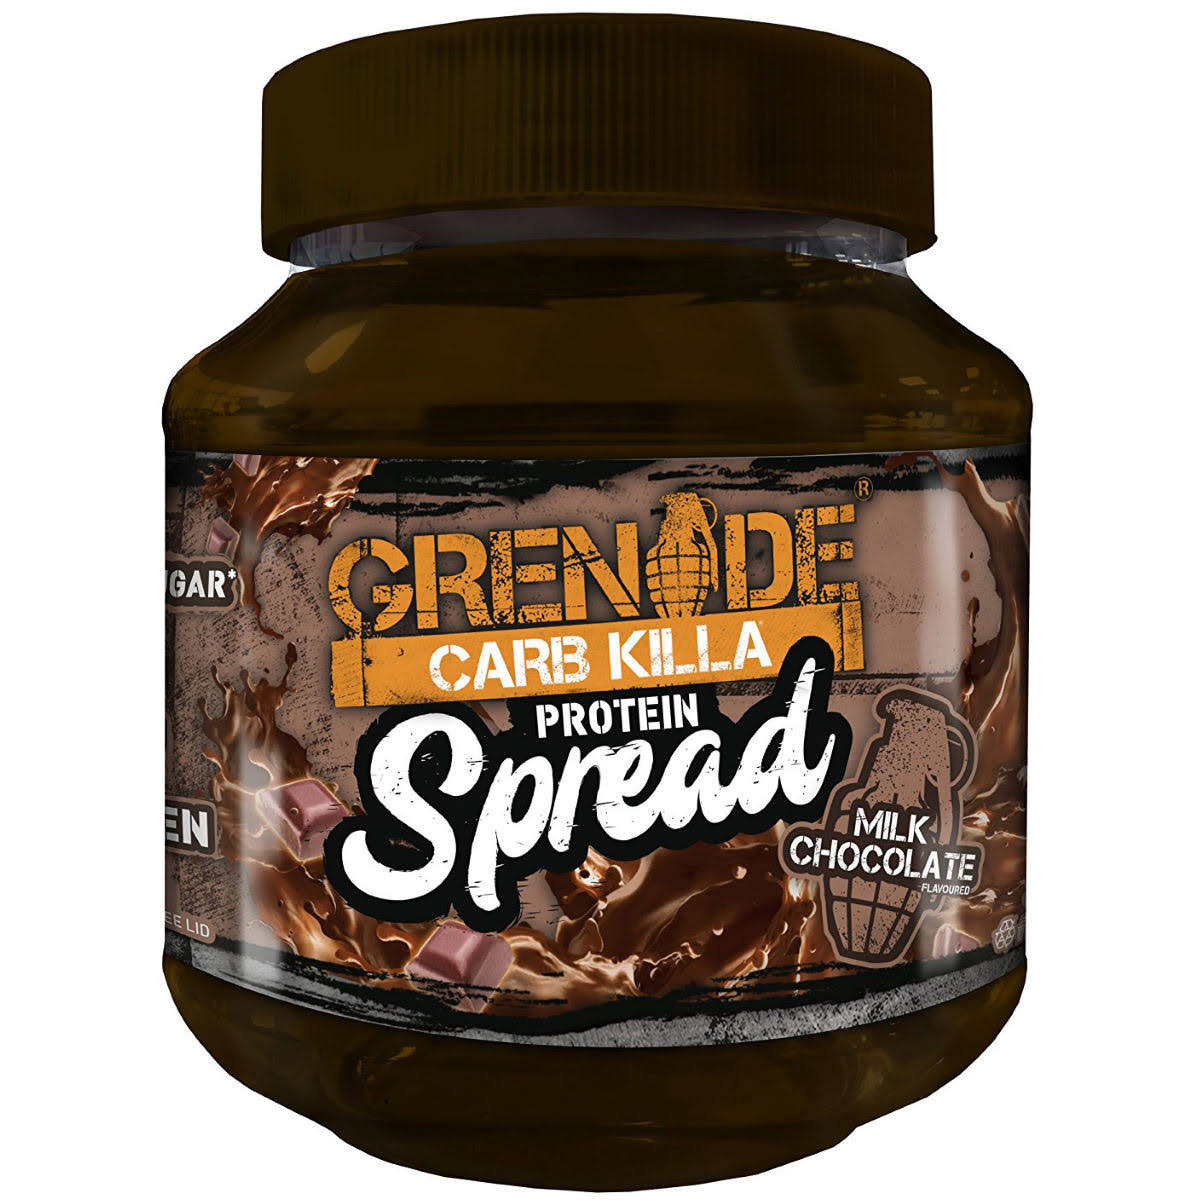 Grenade Carb Killa Protein Spread - 360g, Milk Chocolate